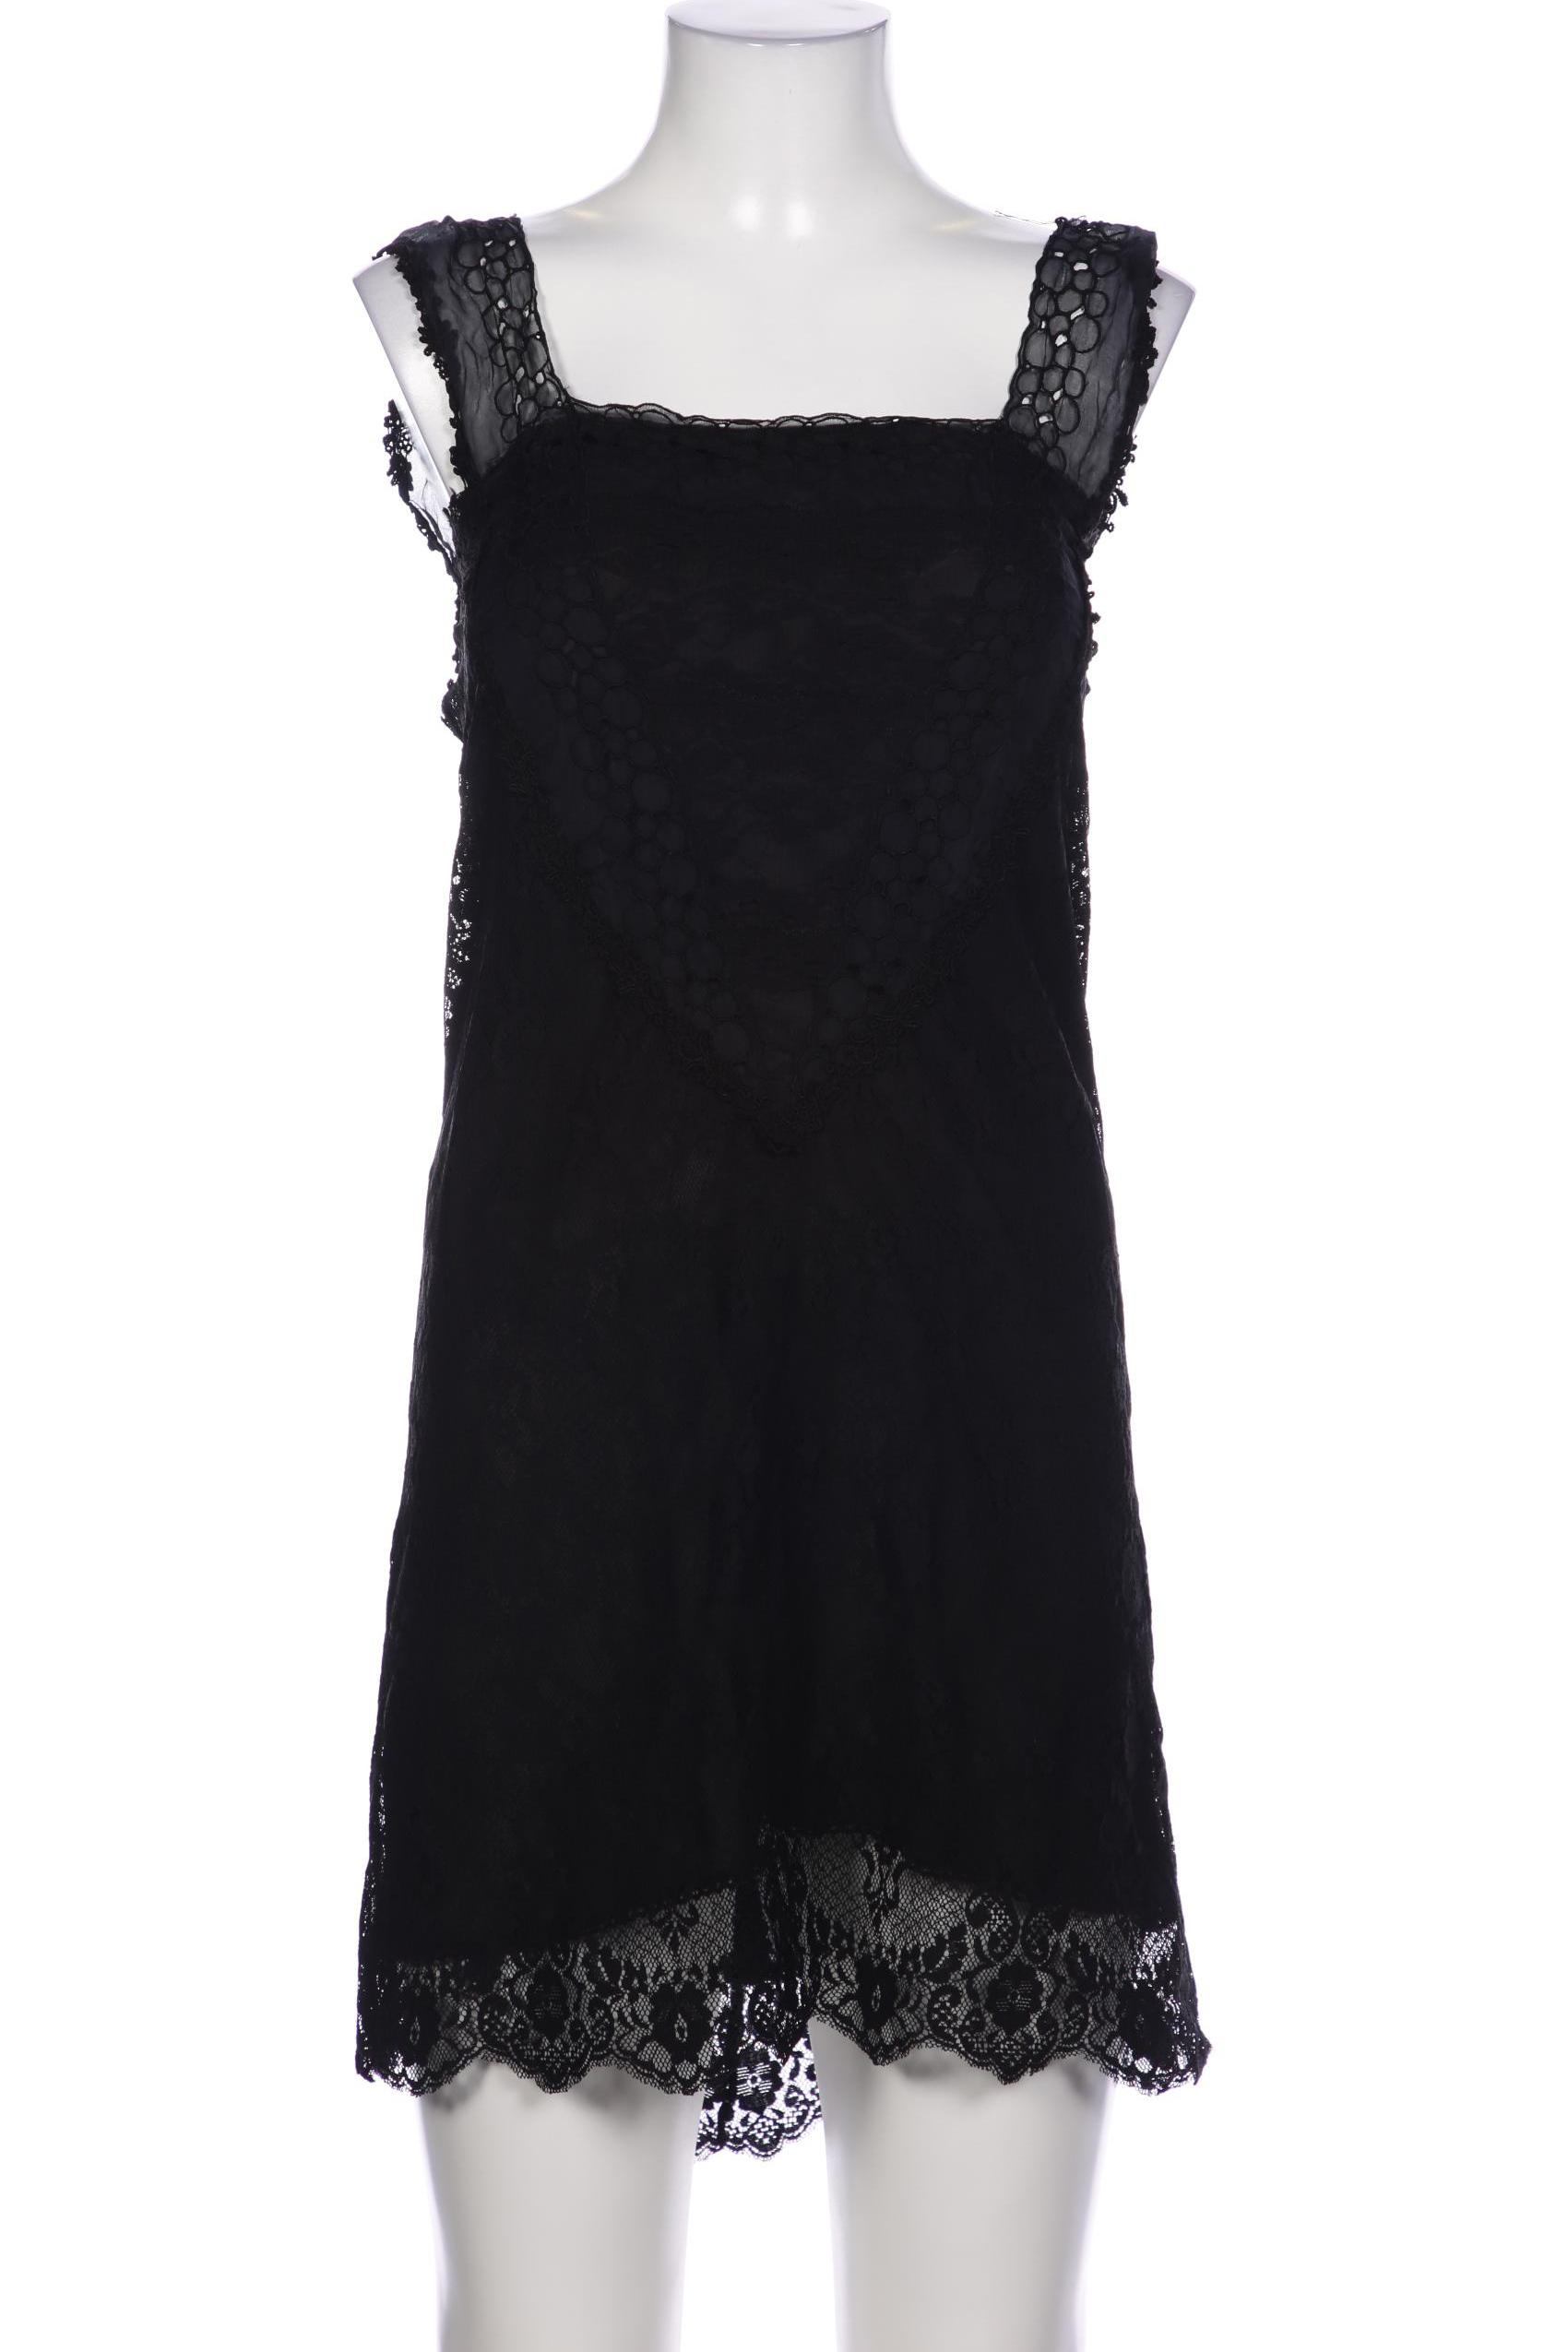 Zara Damen Kleid, schwarz, Gr. 34 von ZARA